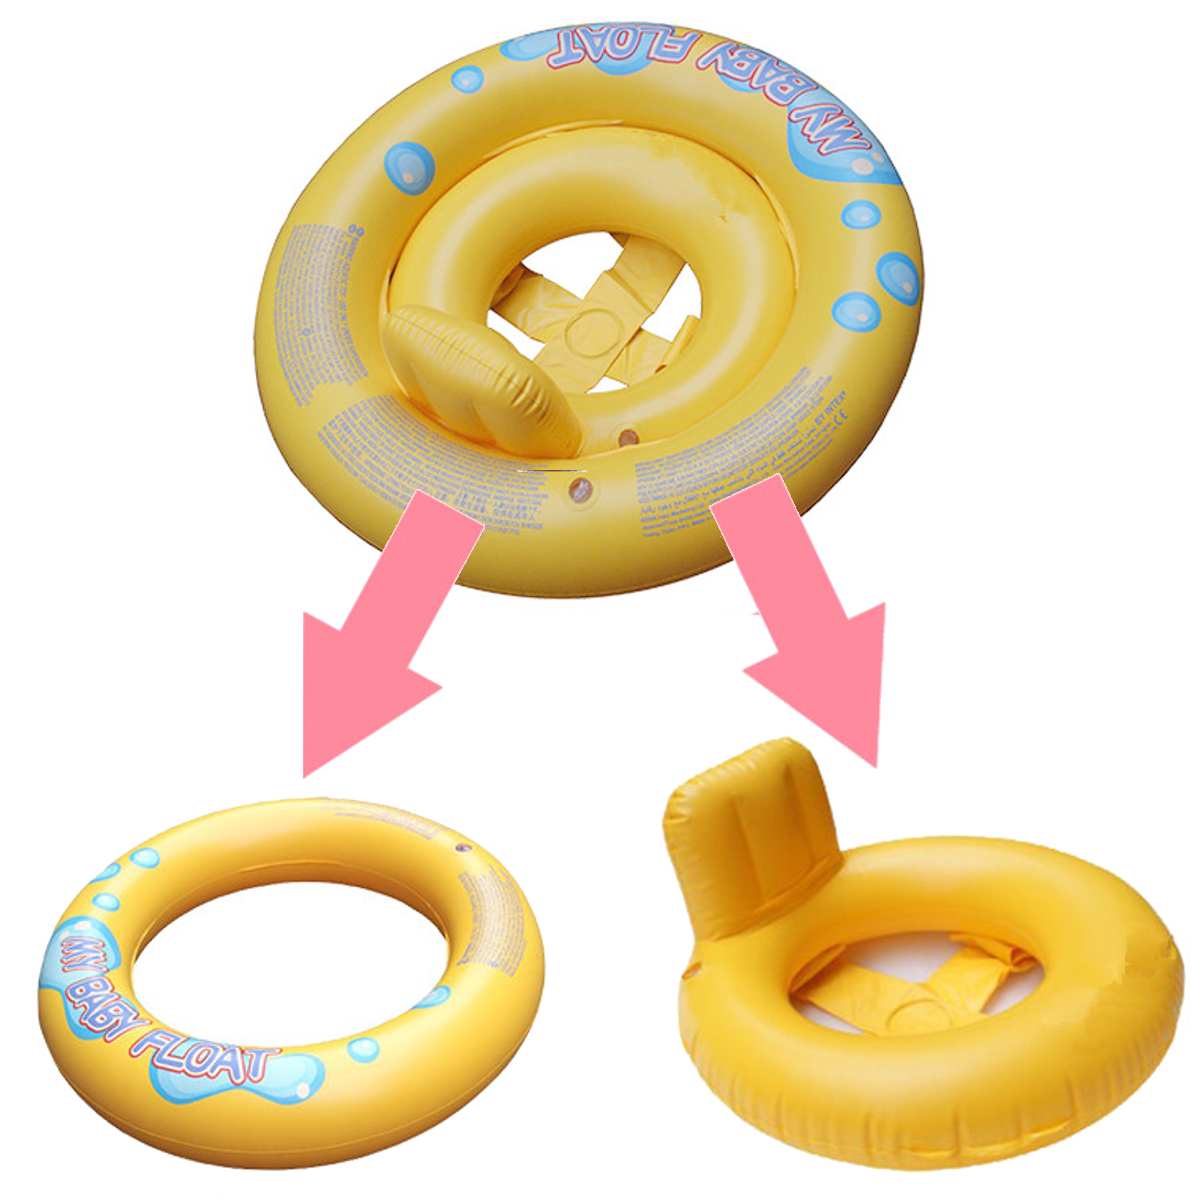 Gonflable sûr bébé anneau de natation piscine infantile piscine flotteur réglable parasol siège bébé bain cercle roue gonflable